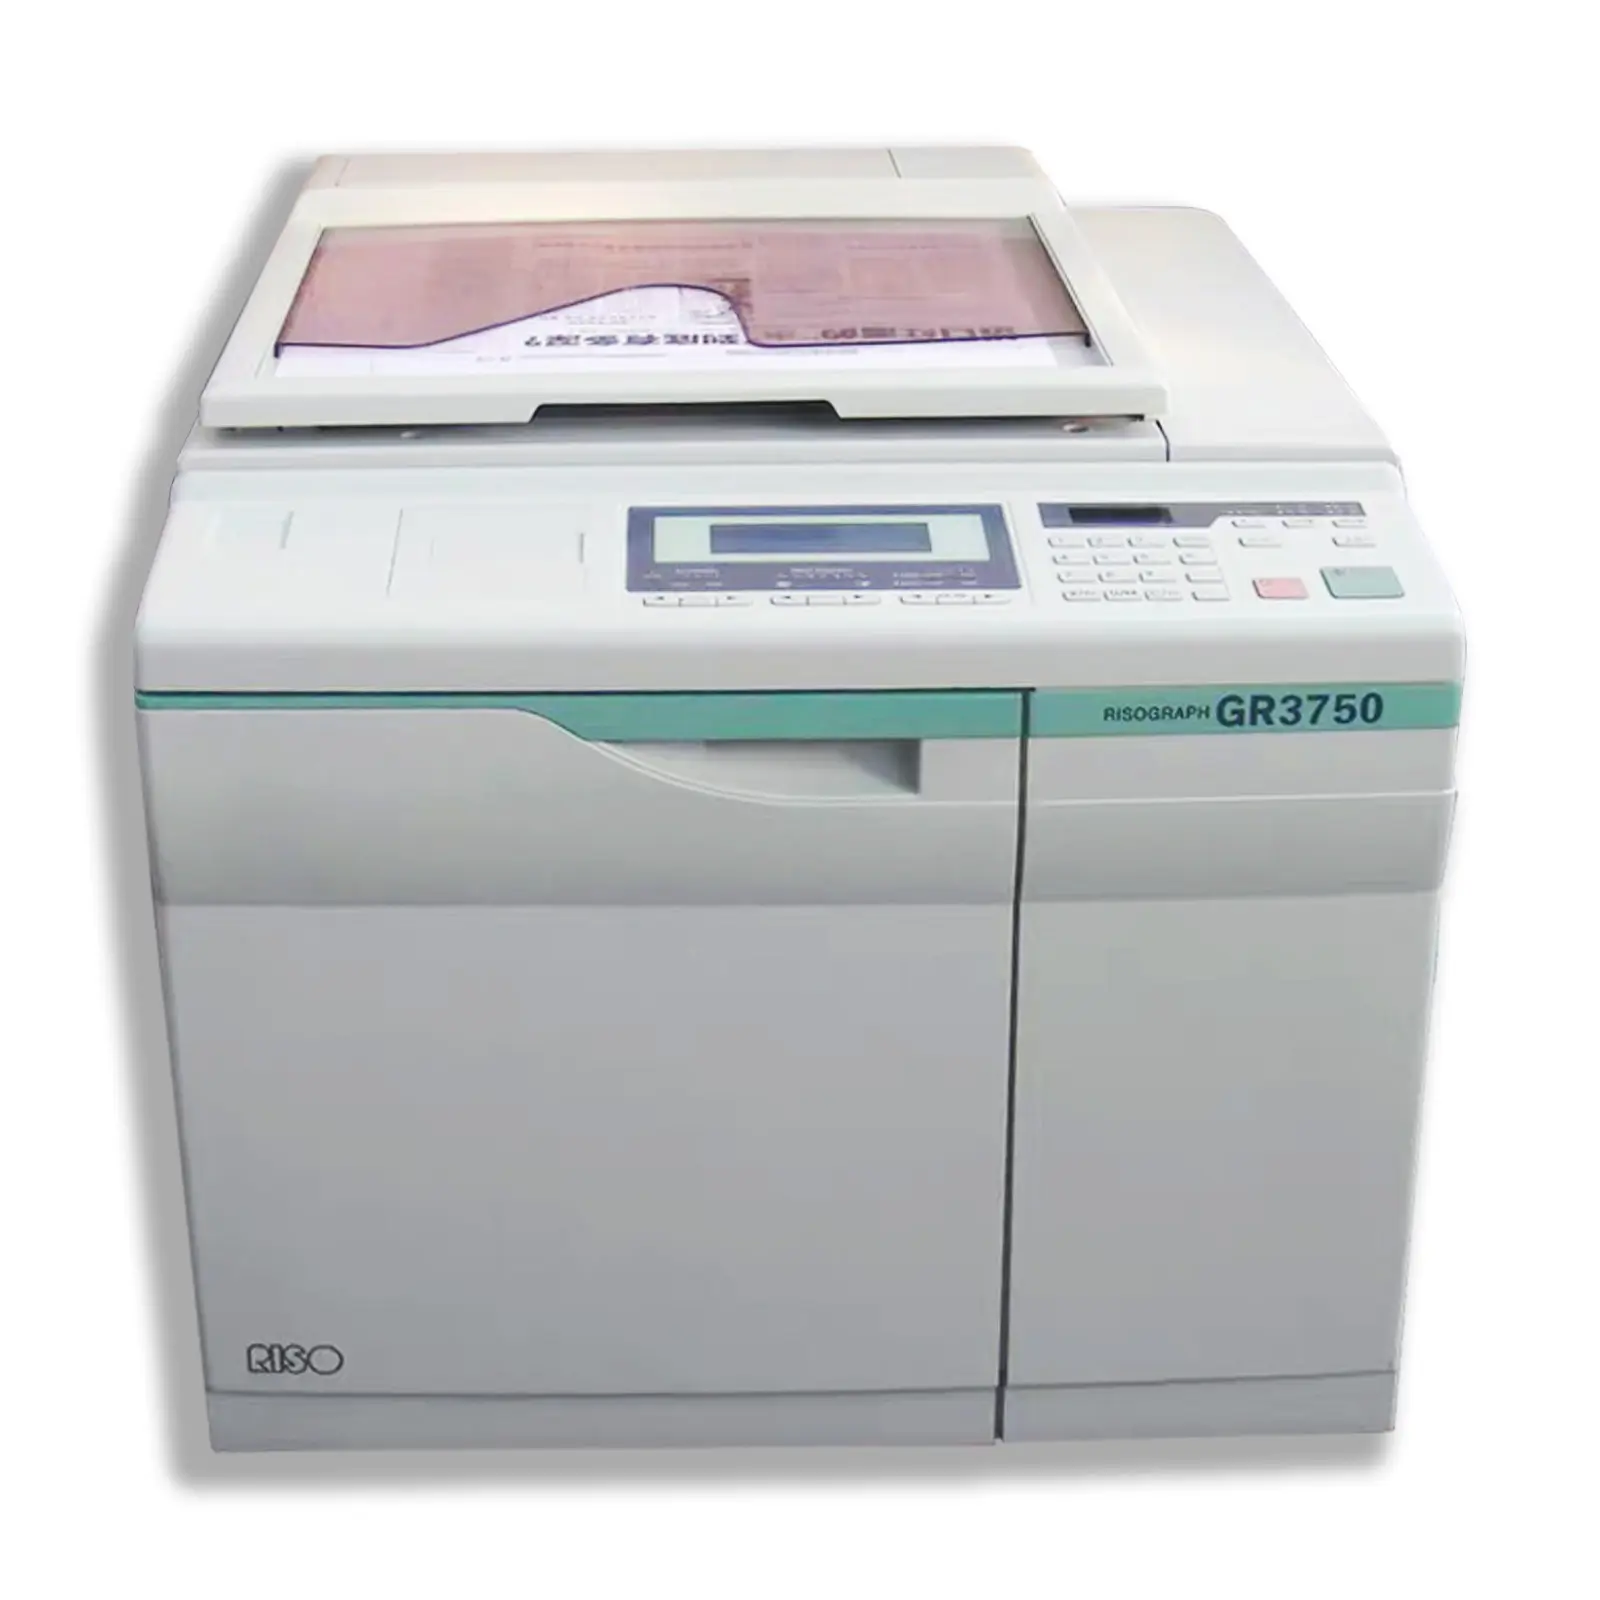 좋은 품질 리퍼 인쇄 기계 100% 테스트 리소 복사기 GR2750 GR3750 리소 프린터 사용 된 복사기